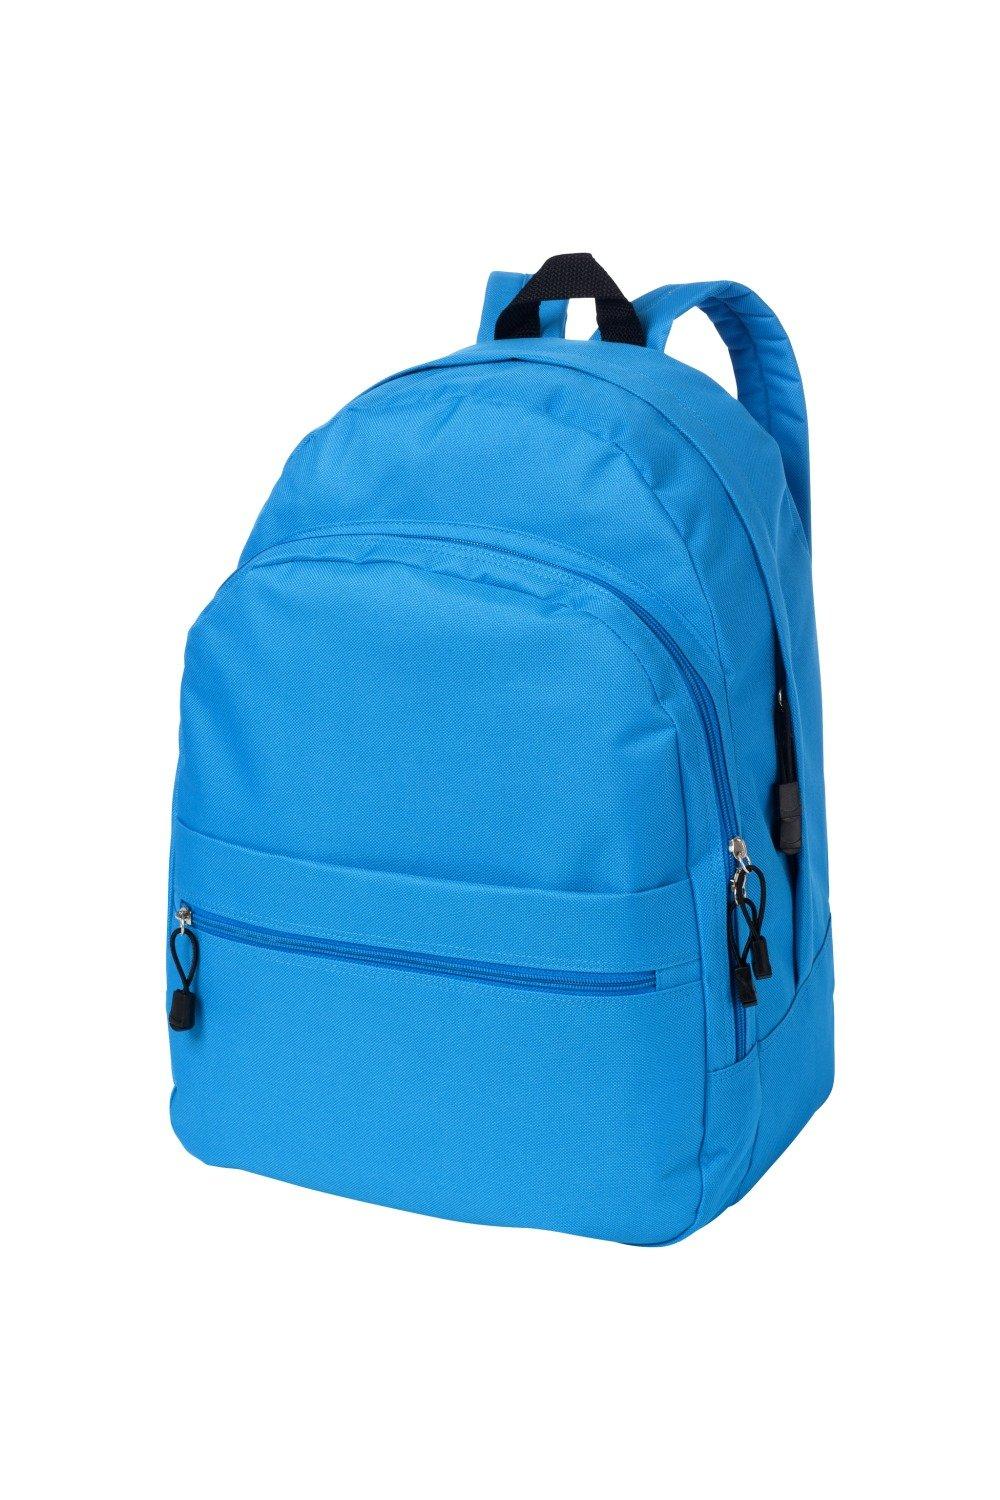 Трендовый рюкзак Bullet, синий рюкзак с карманом единорог